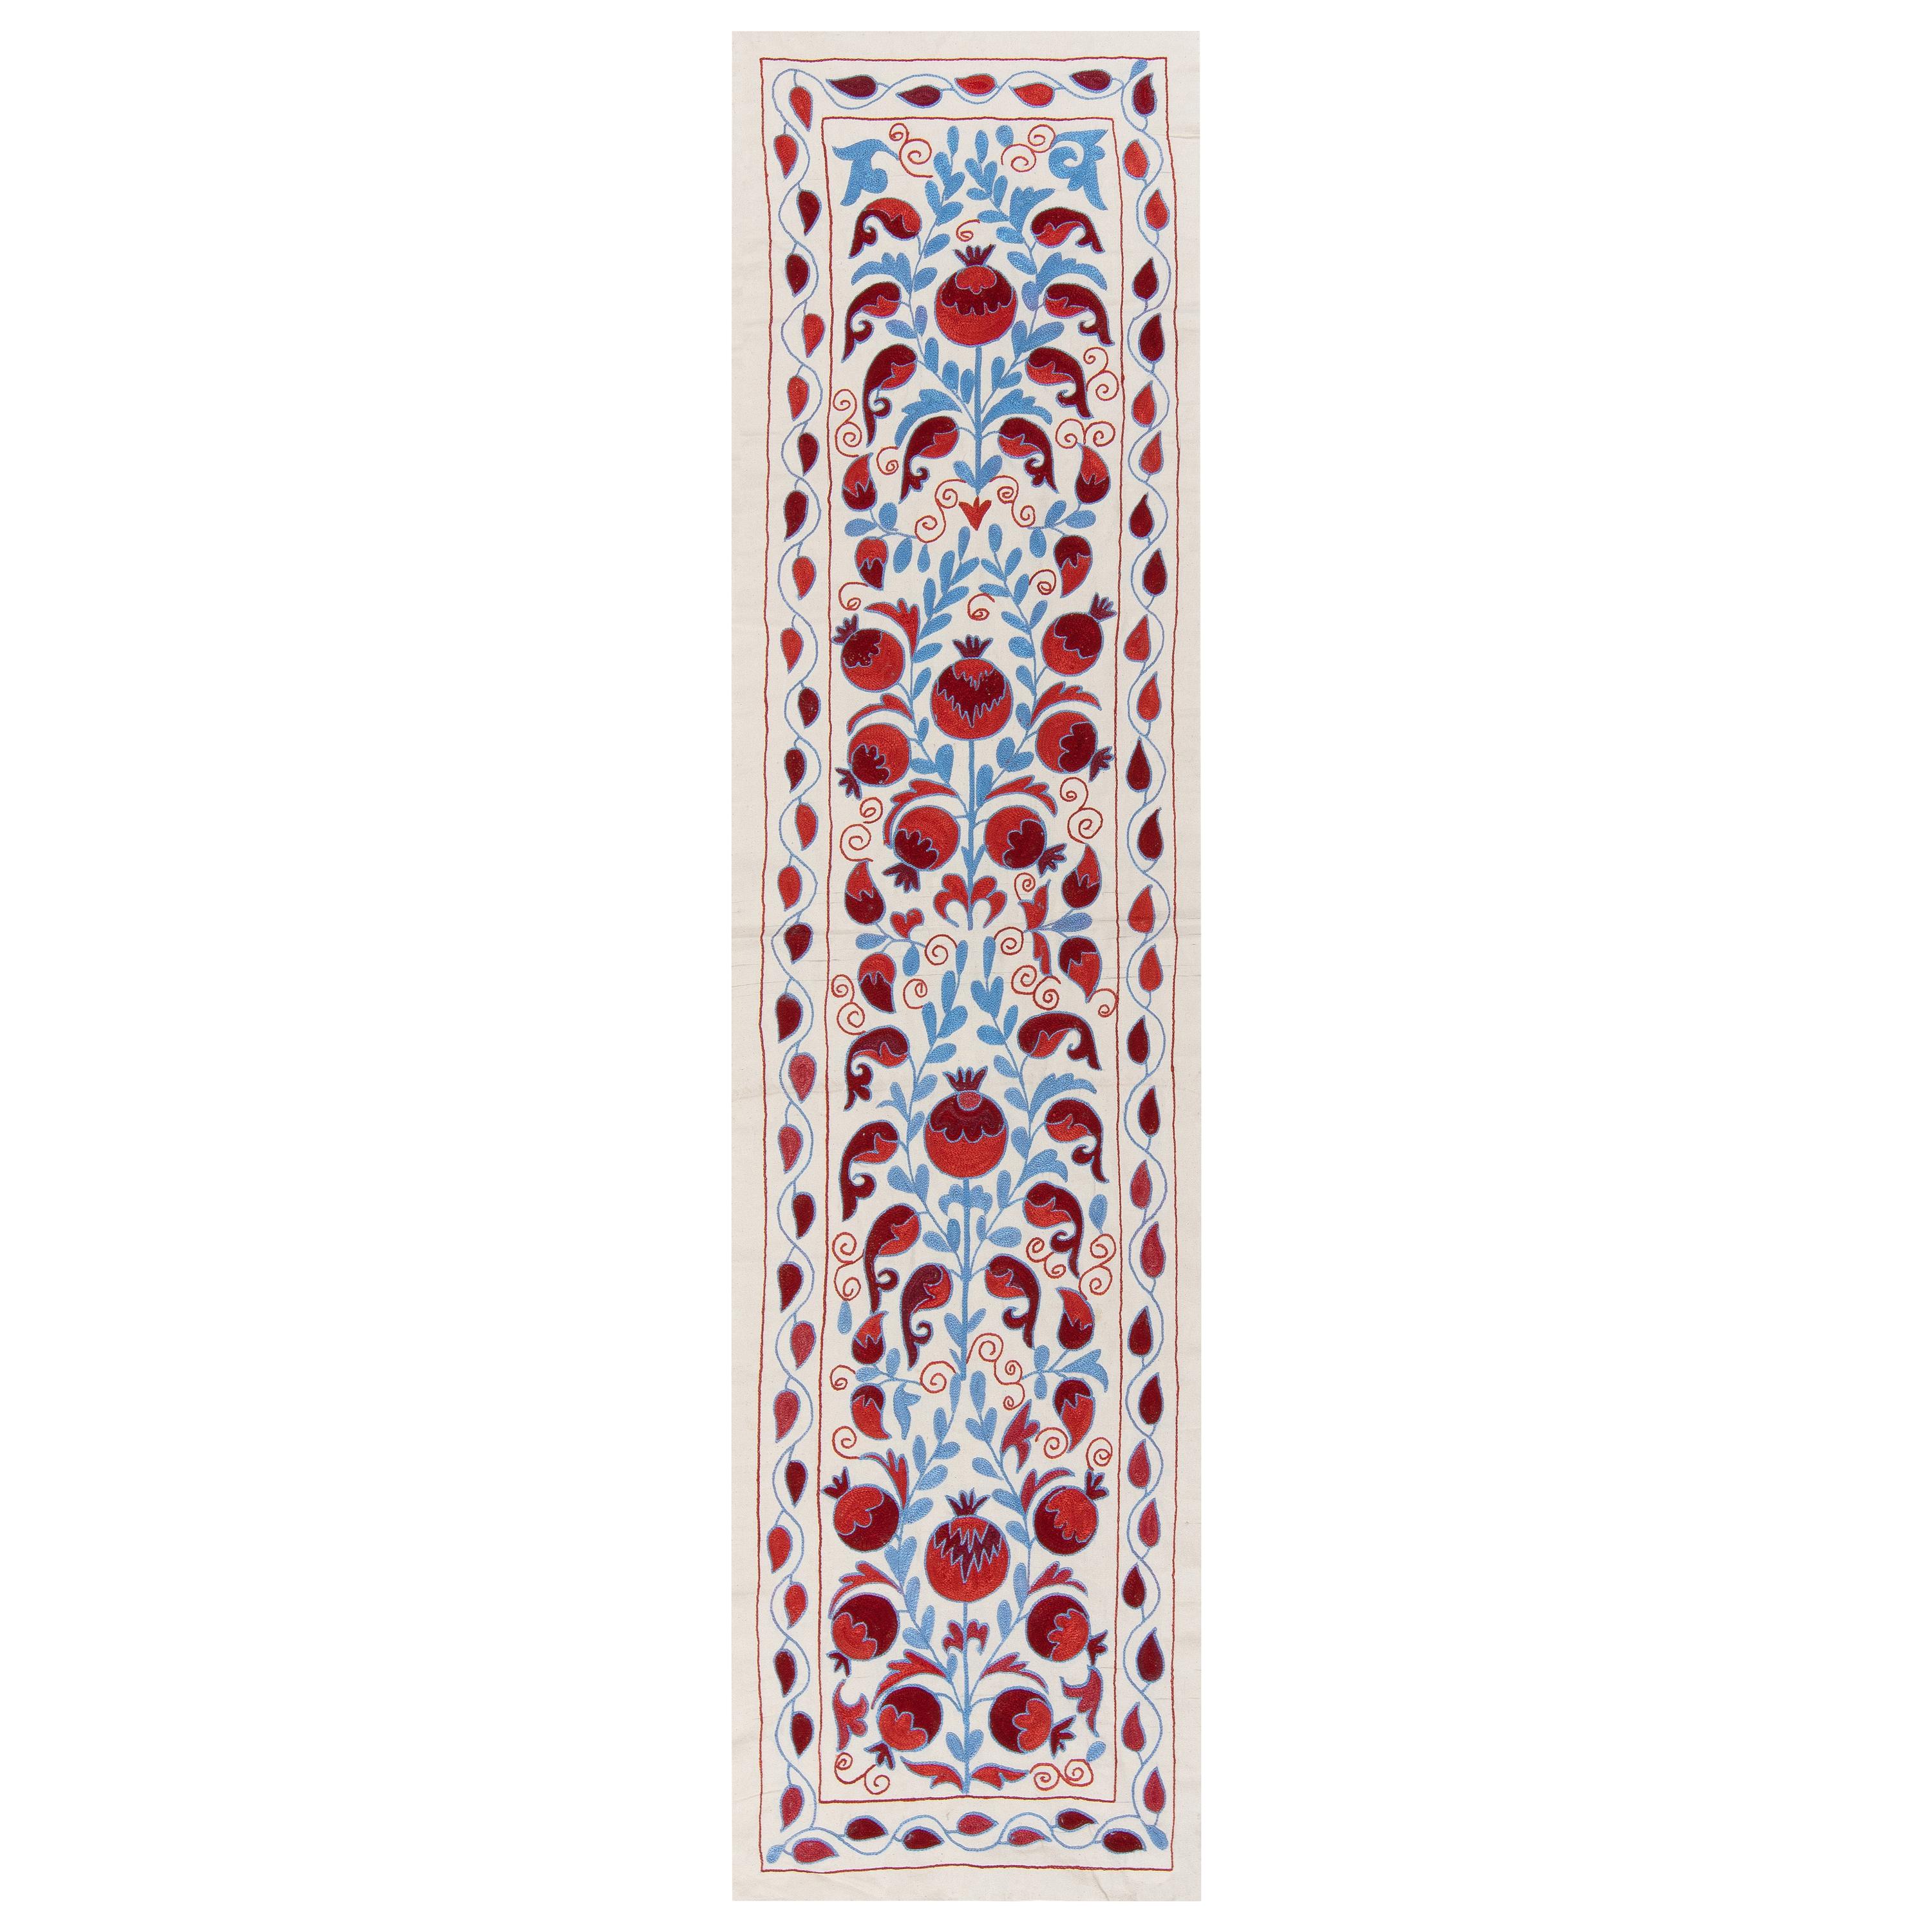 1.7x6.3 Ft Tapis de table en broderie de soie, tenture murale ouzbek en rouge, crème et bleu